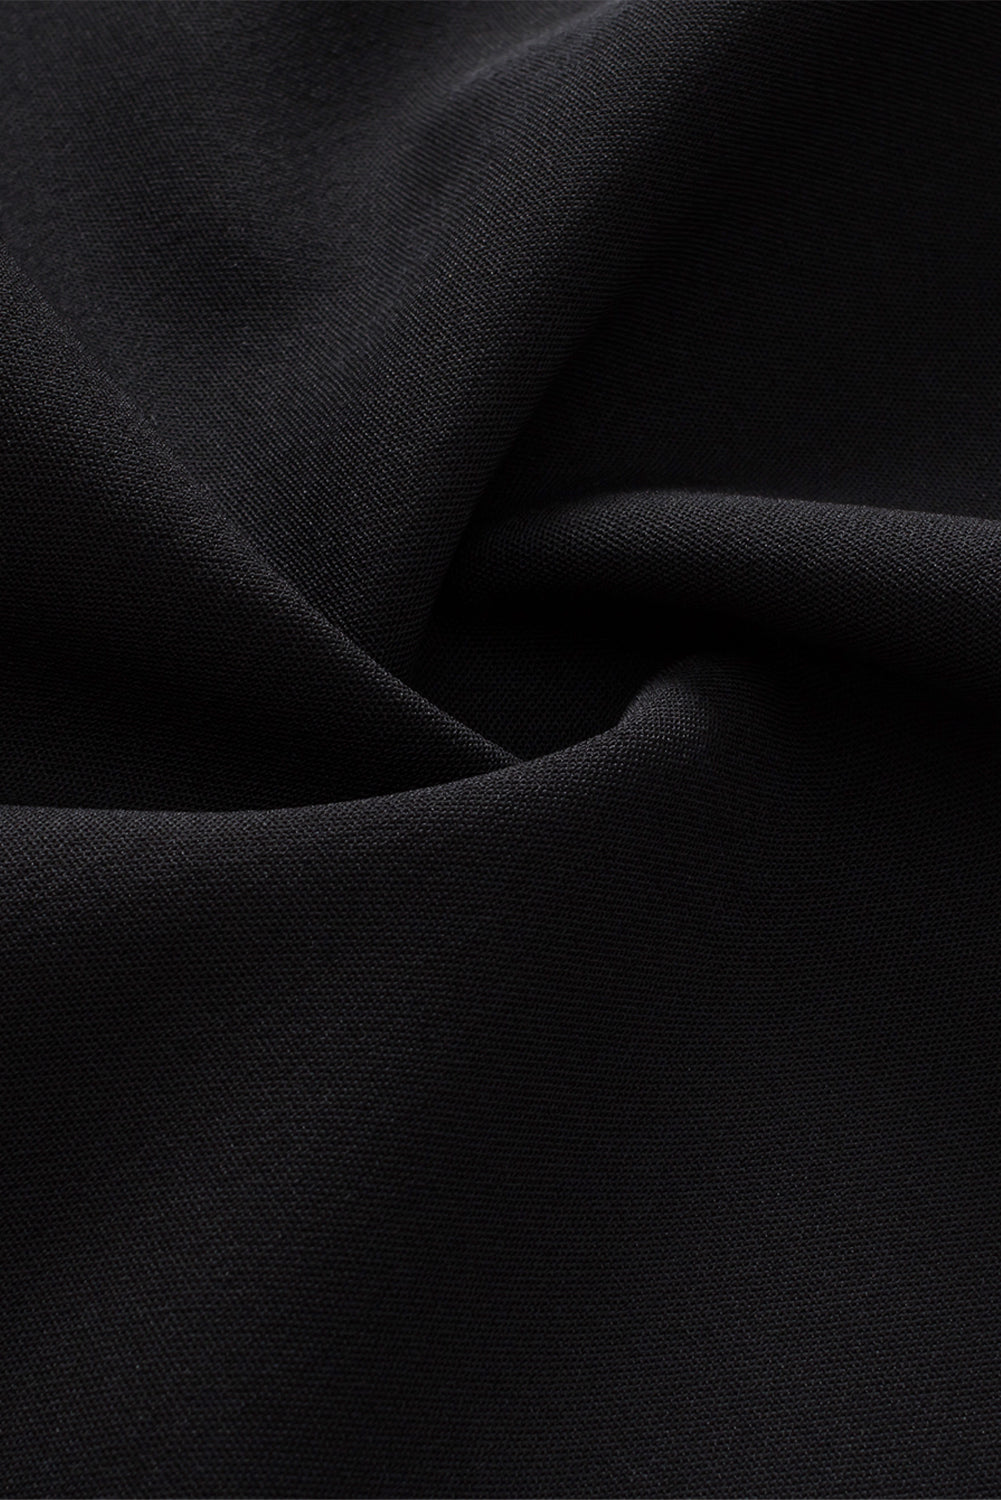 Tunique noire sans manches en patchwork de crochet bohème